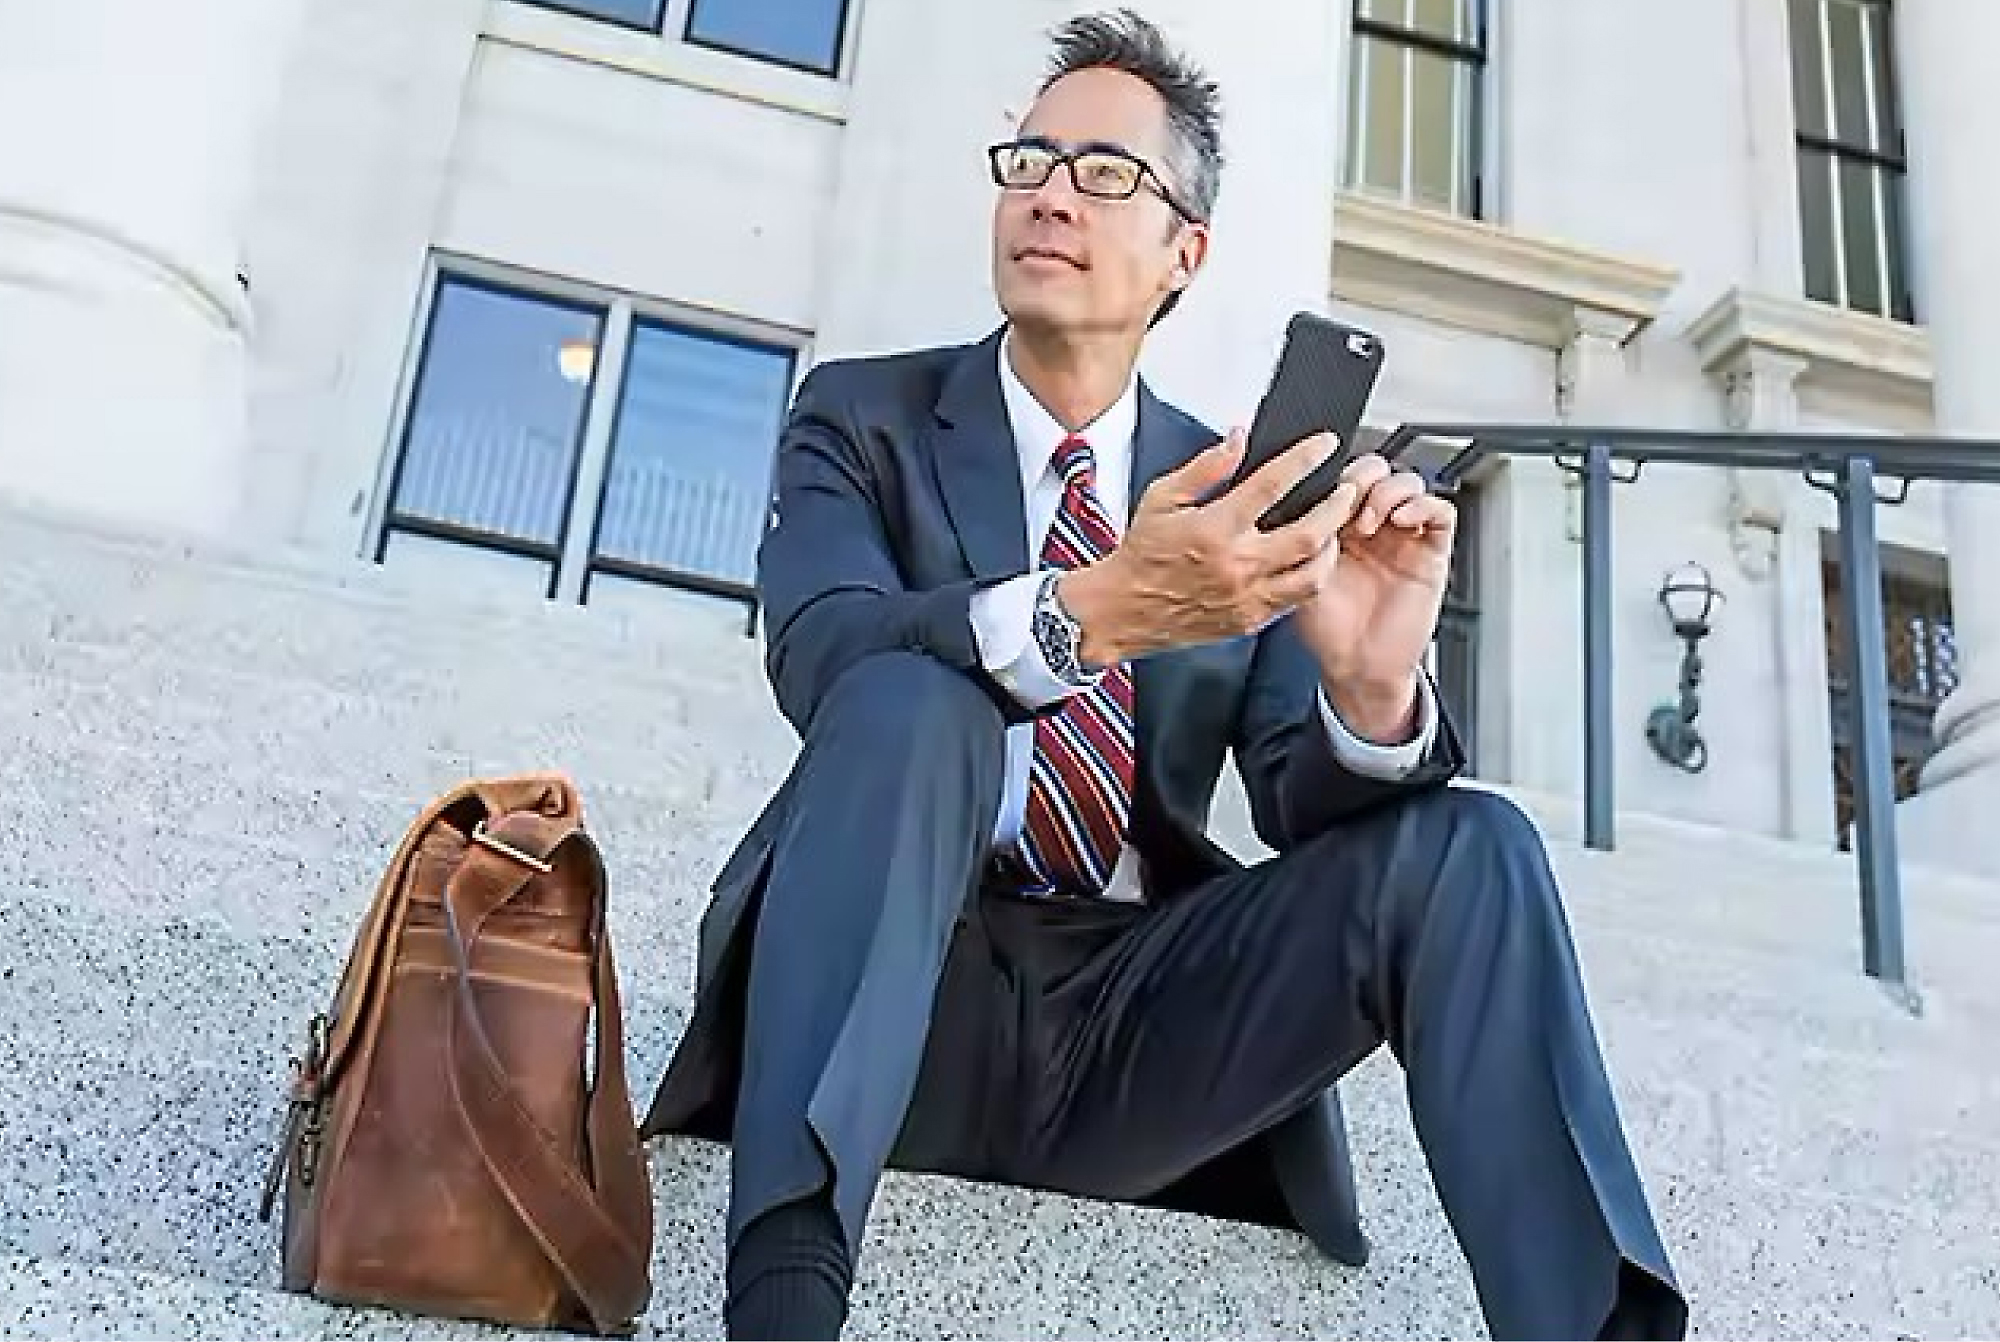 En forretningsmand iført jakkesæt og briller sidder på trin uden for en bygning og bruger en smartphone med en lædertaske ved sin side.